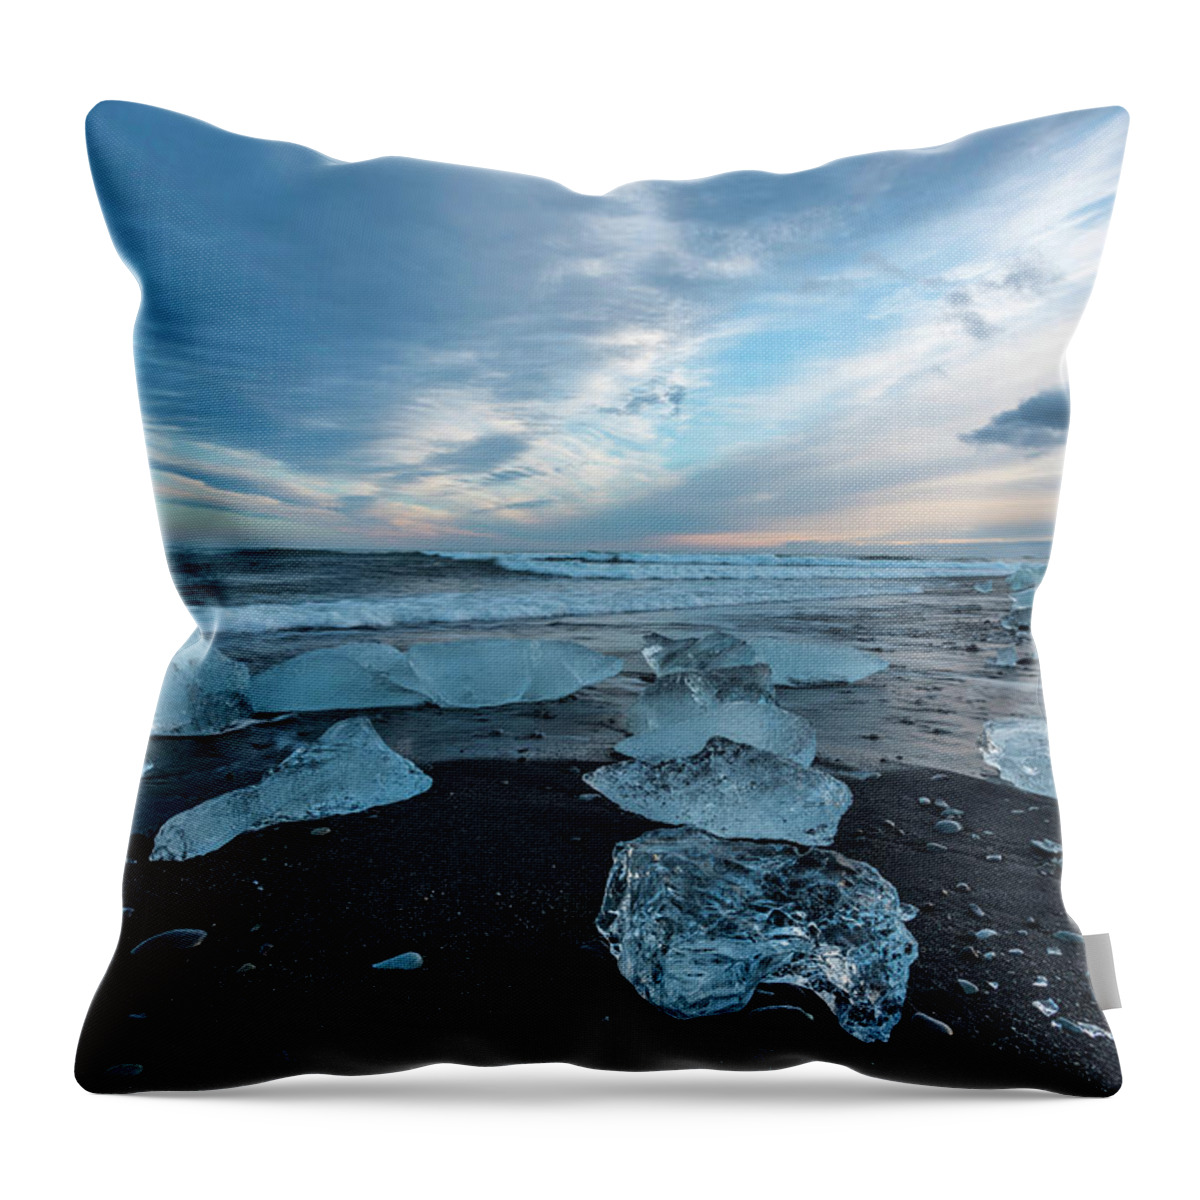 Landscape Throw Pillow featuring the photograph Diamond Beach Sunset by Scott Cunningham